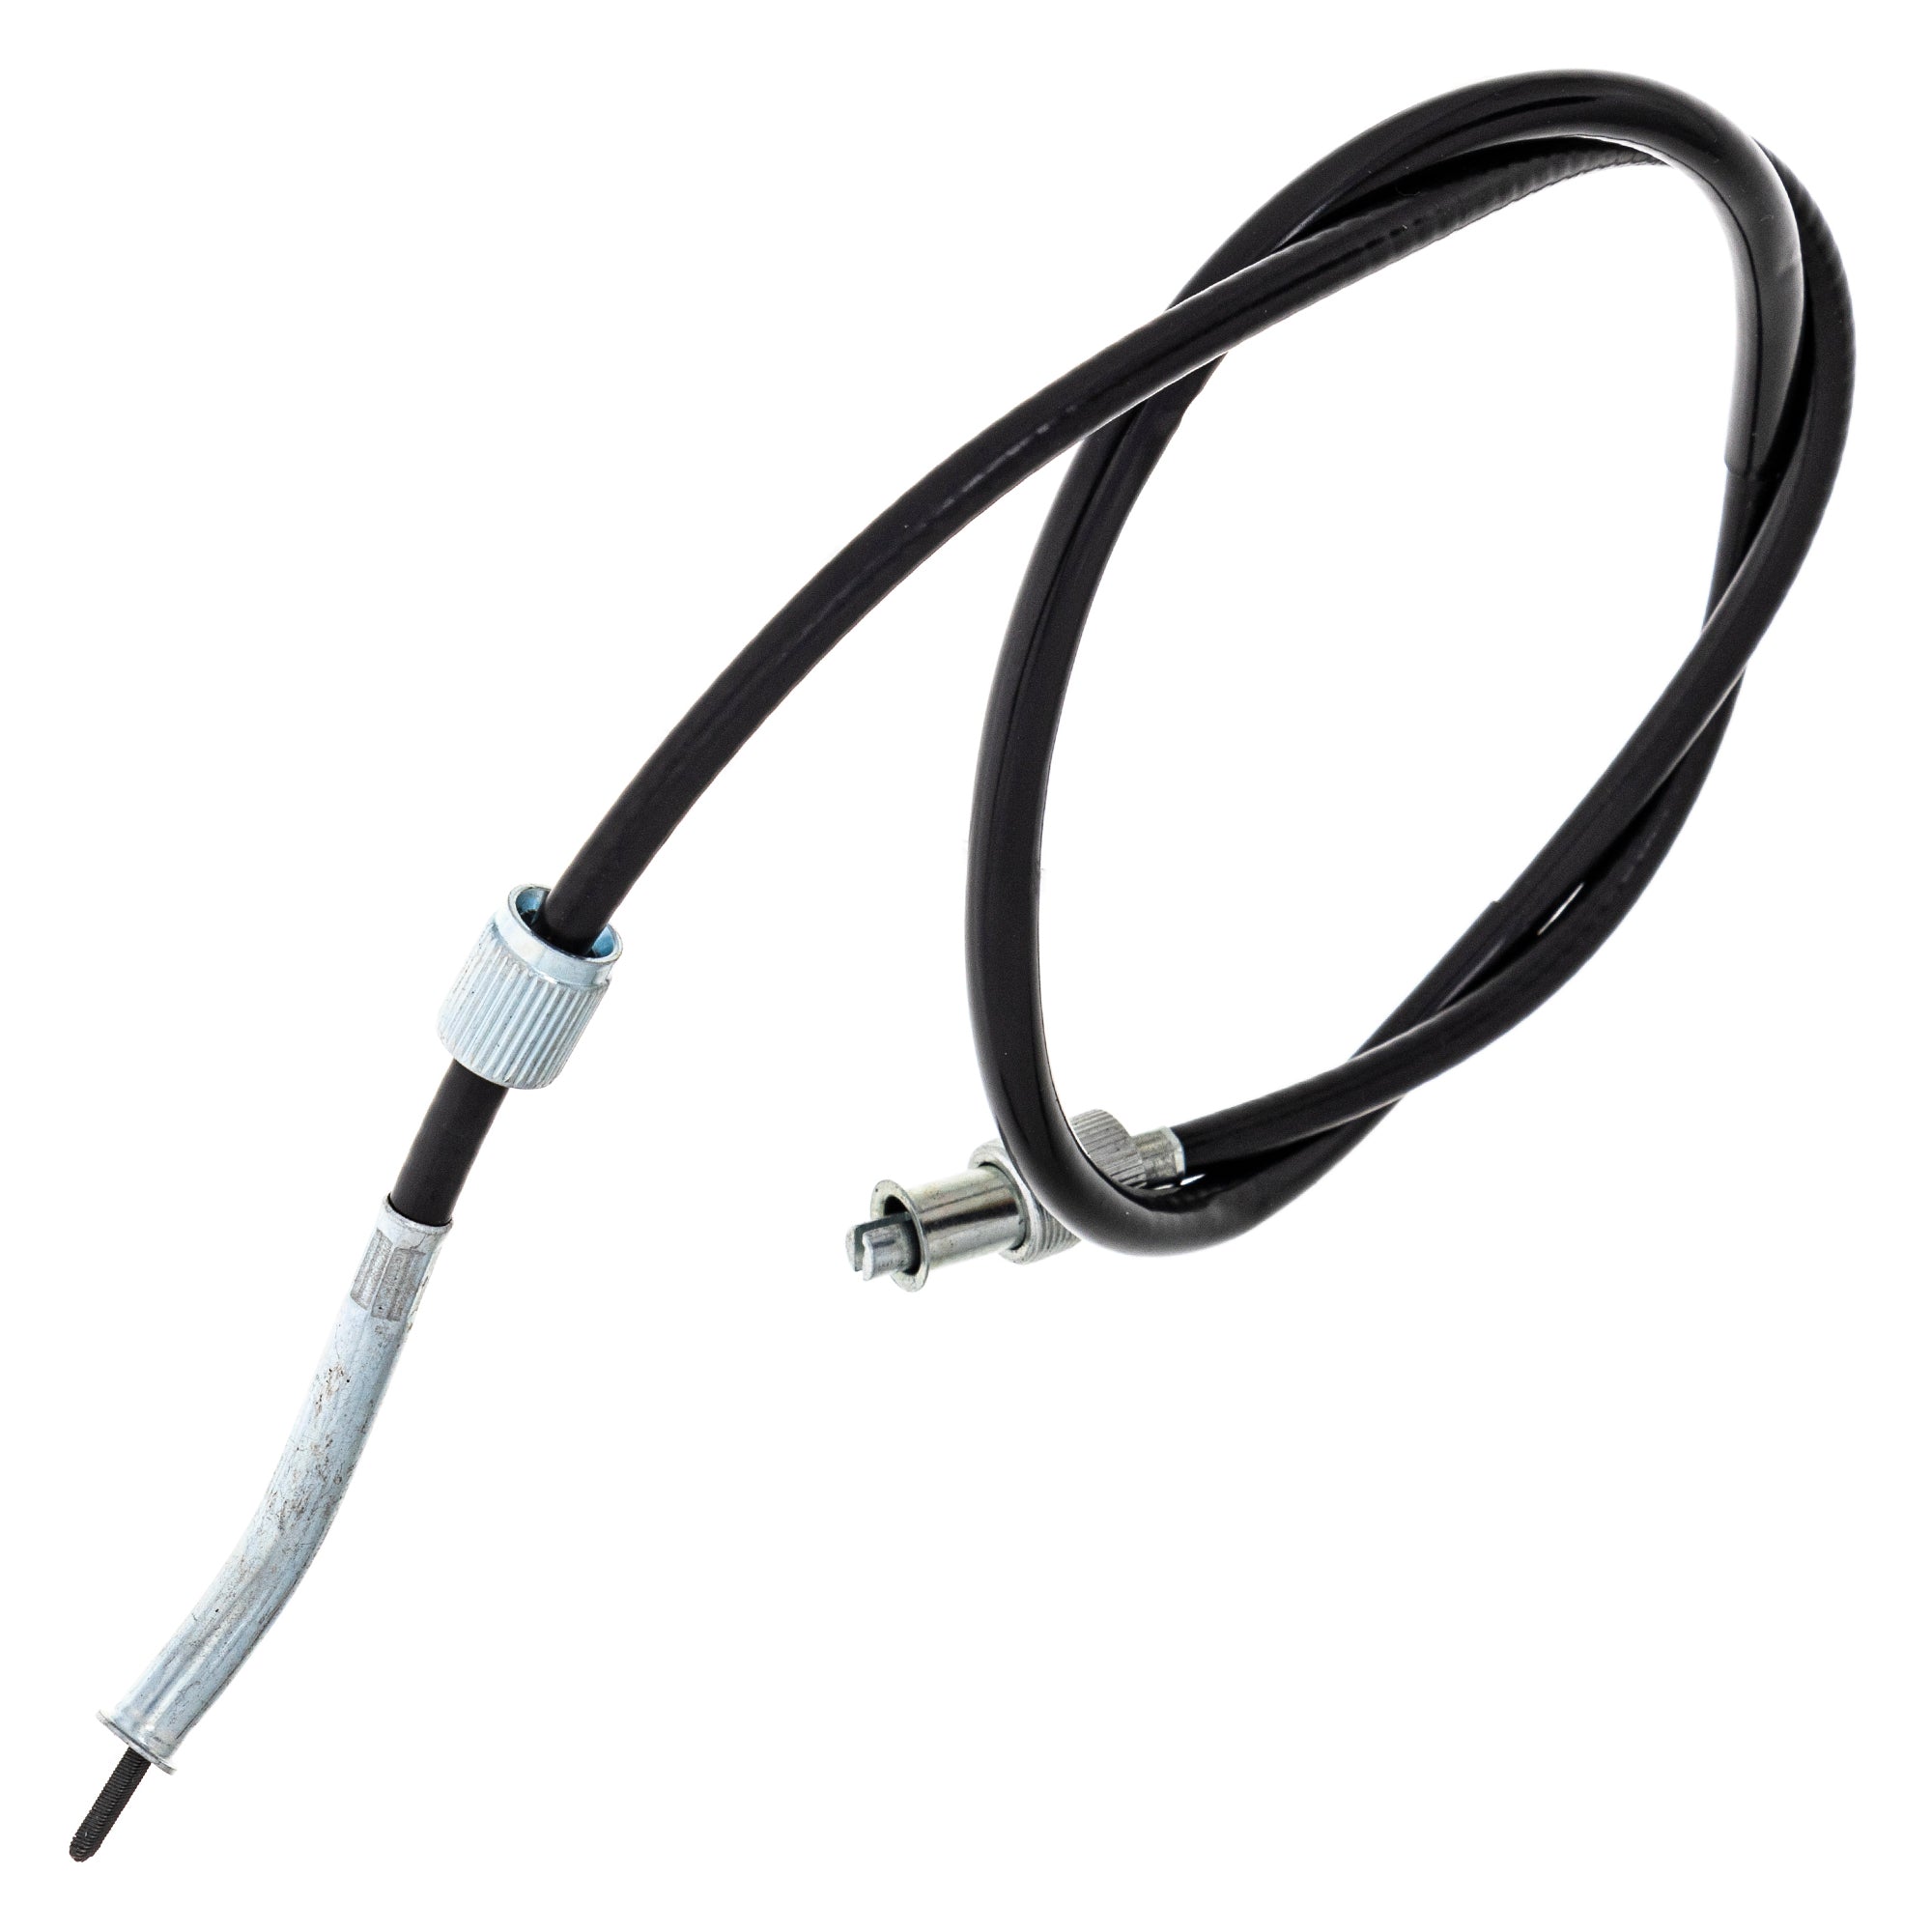 Speedometer Cable for Suzuki GS1000 GS1000E GS1000G 34910-45123